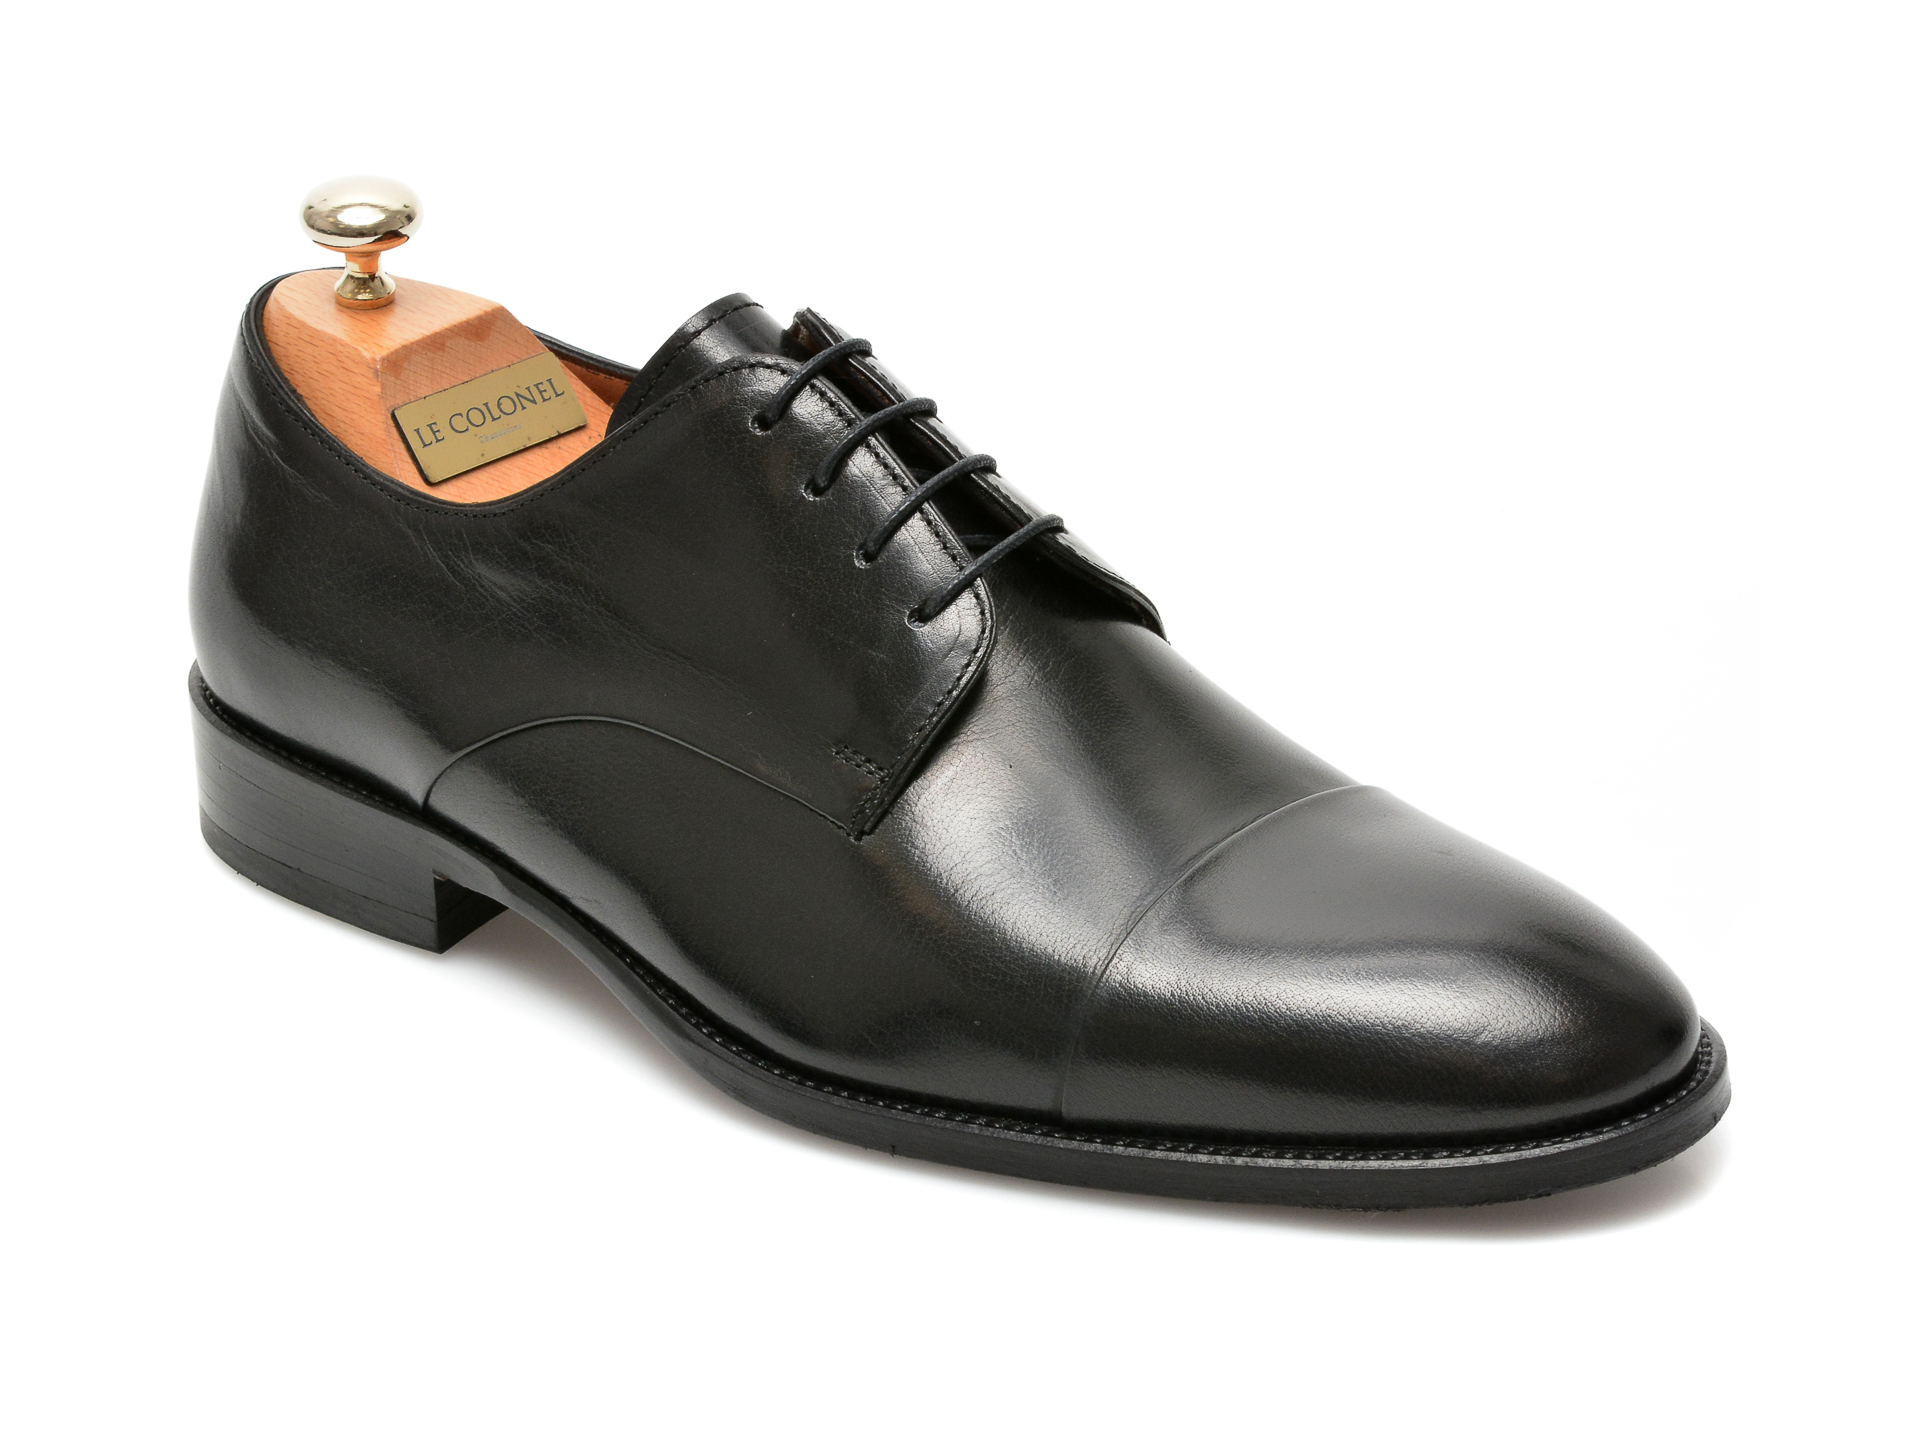 Pantofi LE COLONEL negri, 49809, din piele naturala Le Colonel imagine 2022 reducere